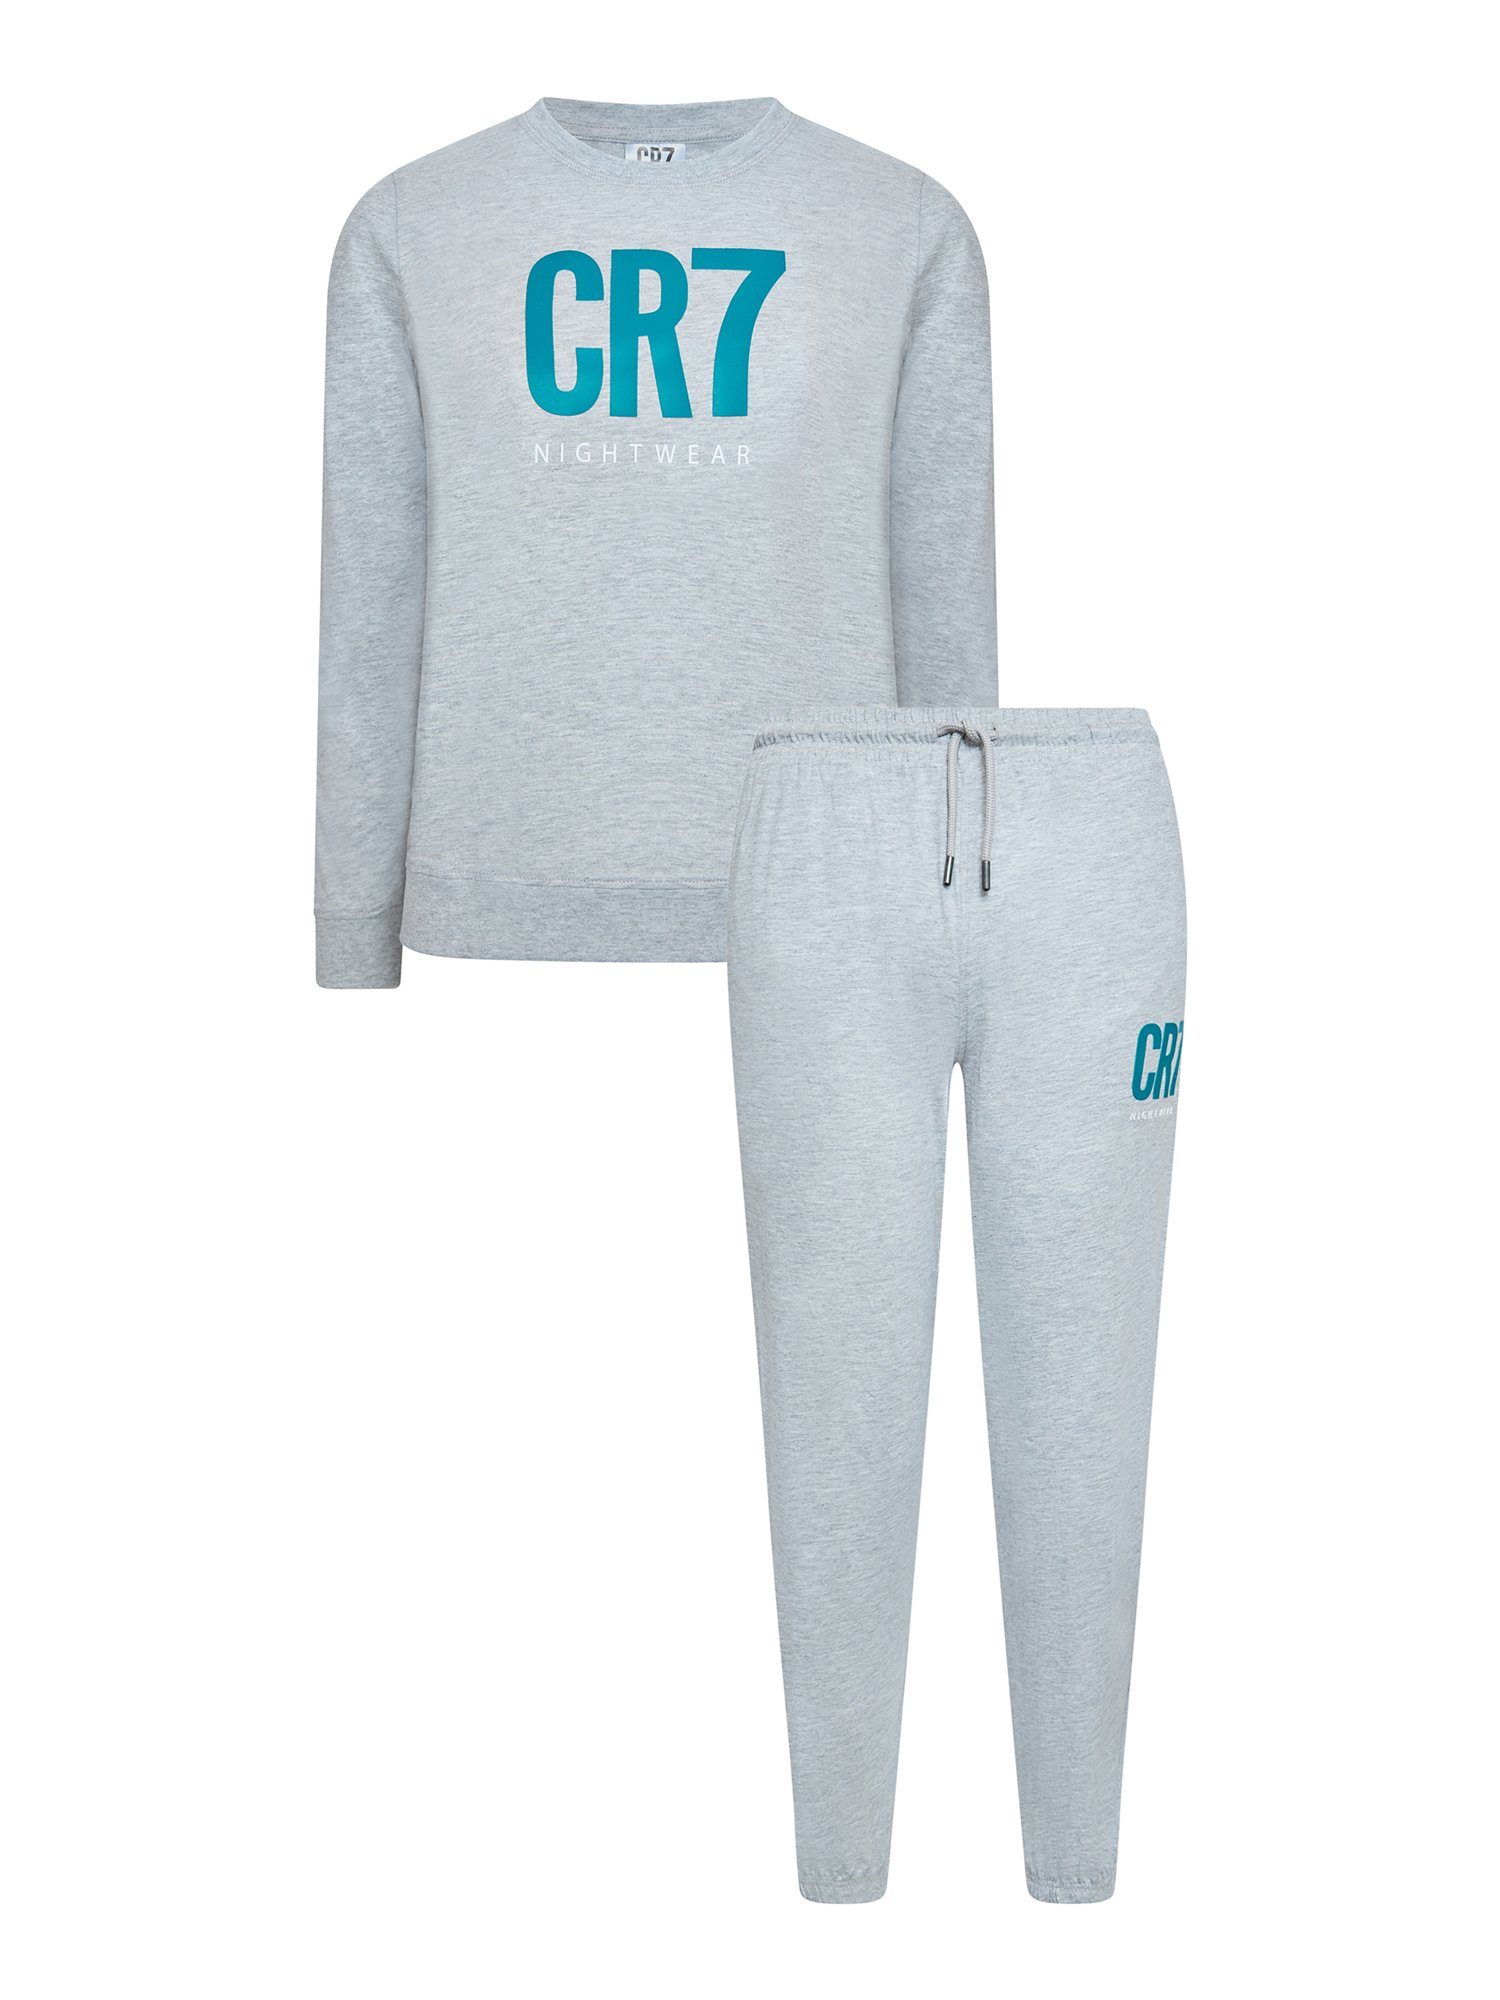 tlg) KIDS Pyjama CR7 grau (1